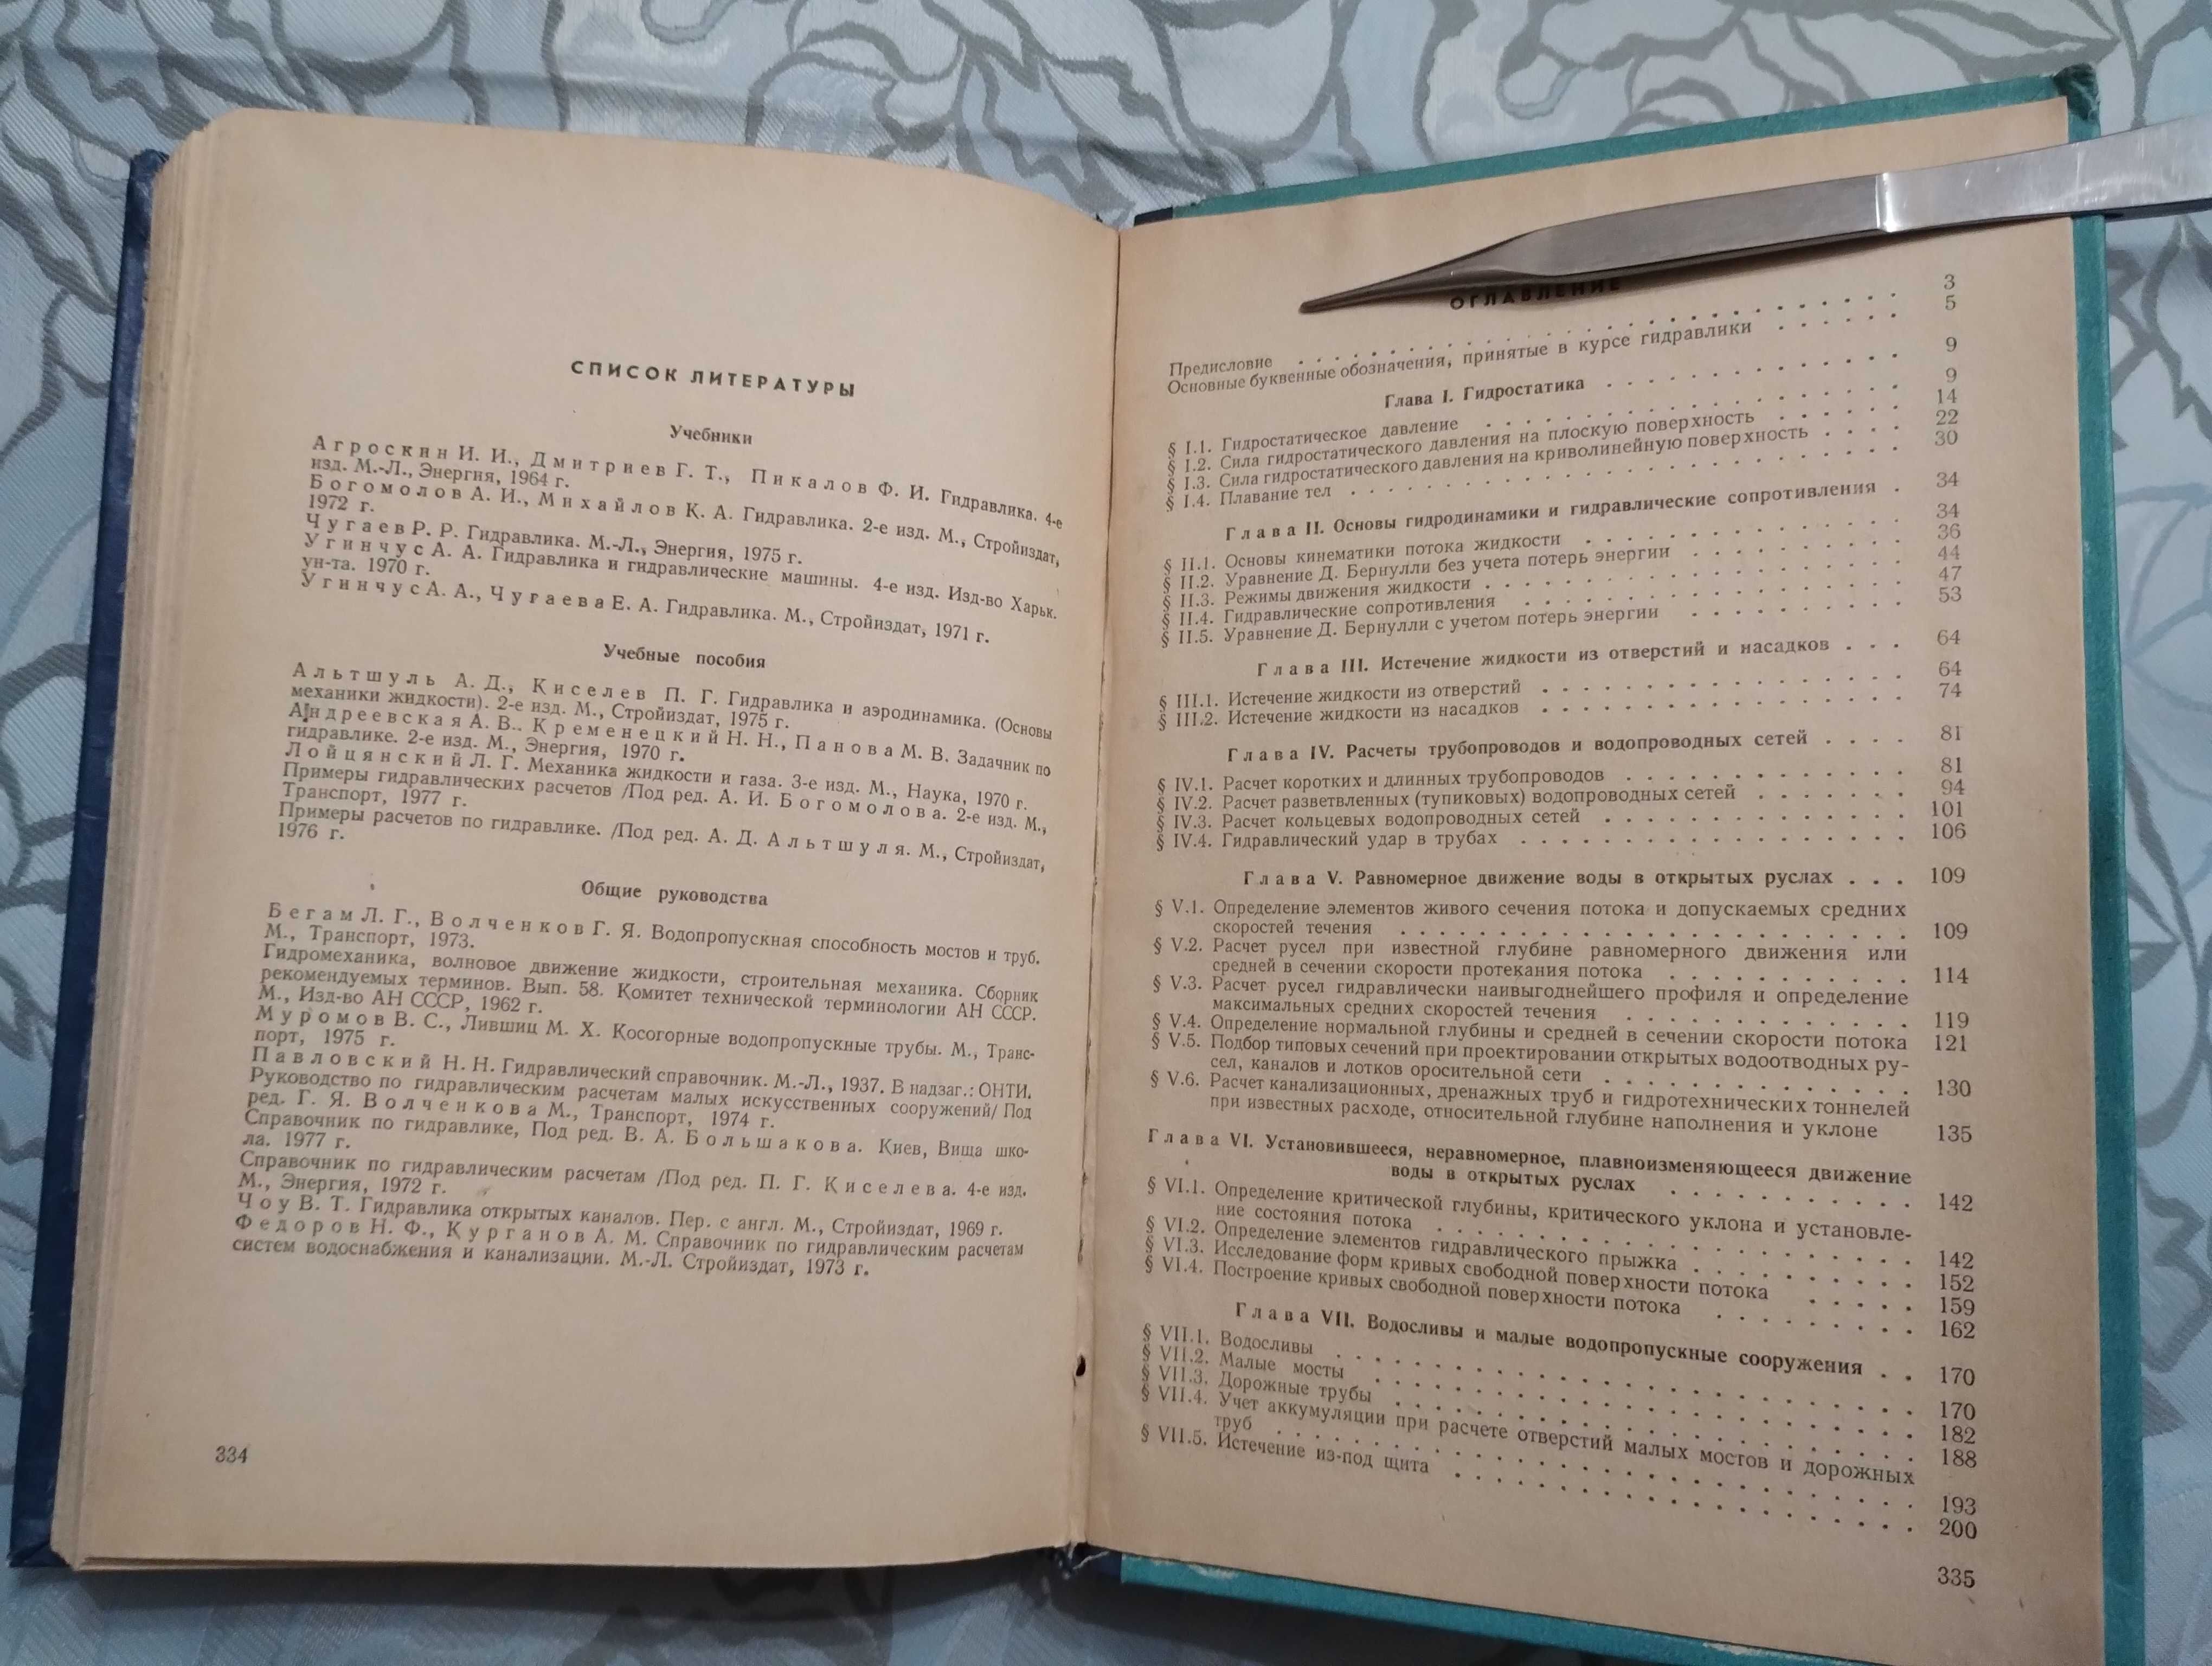 Сборник задач по гидравлике 1979 год с автографами авторов.